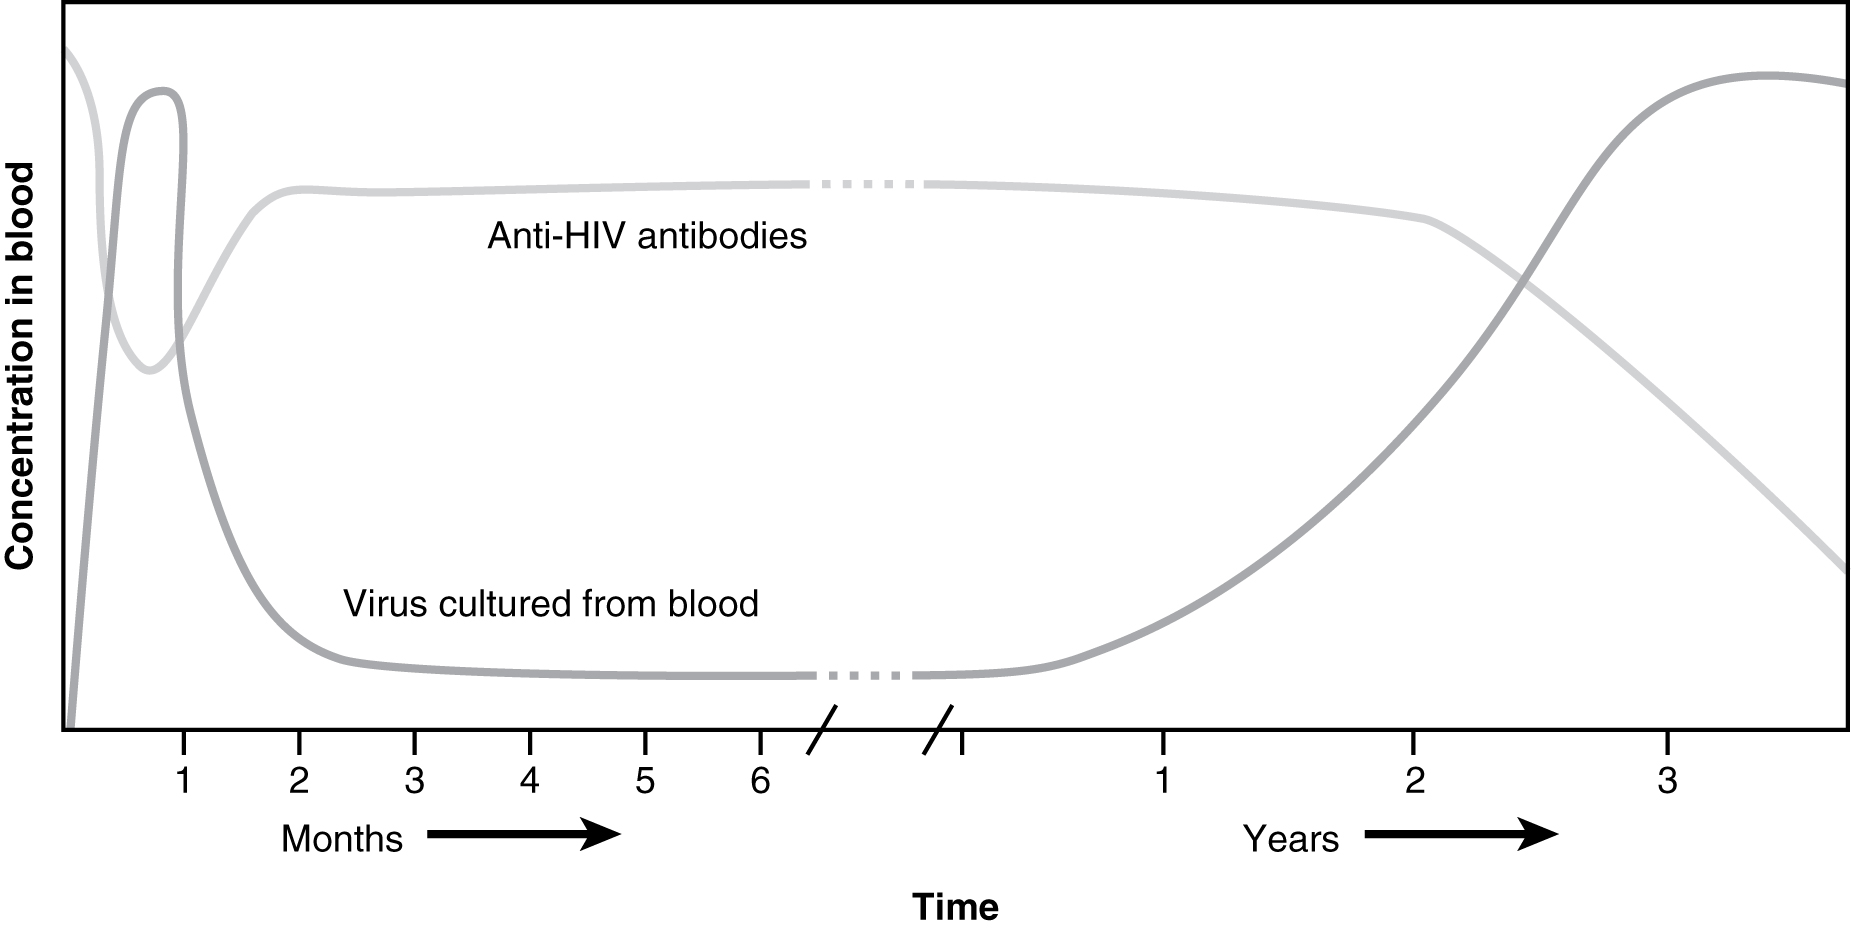 Este gráfico mostra a concentração de partículas virais do HIV no sangue ao longo do tempo em anos.